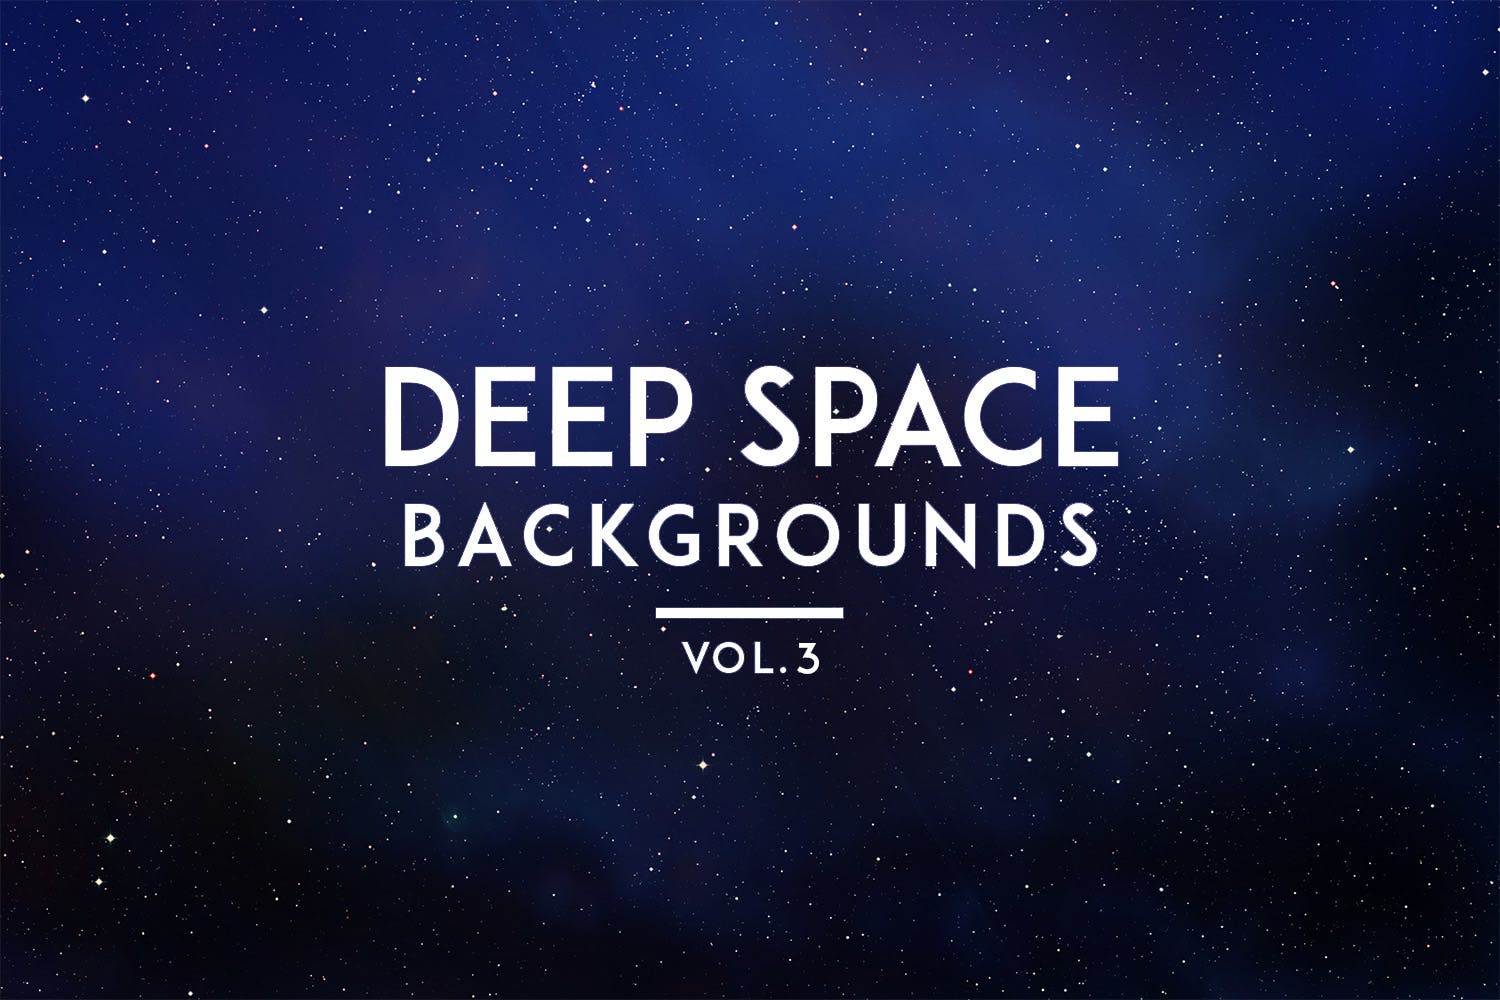 太空星空高清背景图片素材v3 Deep Space Backgrounds Vol. 3插图